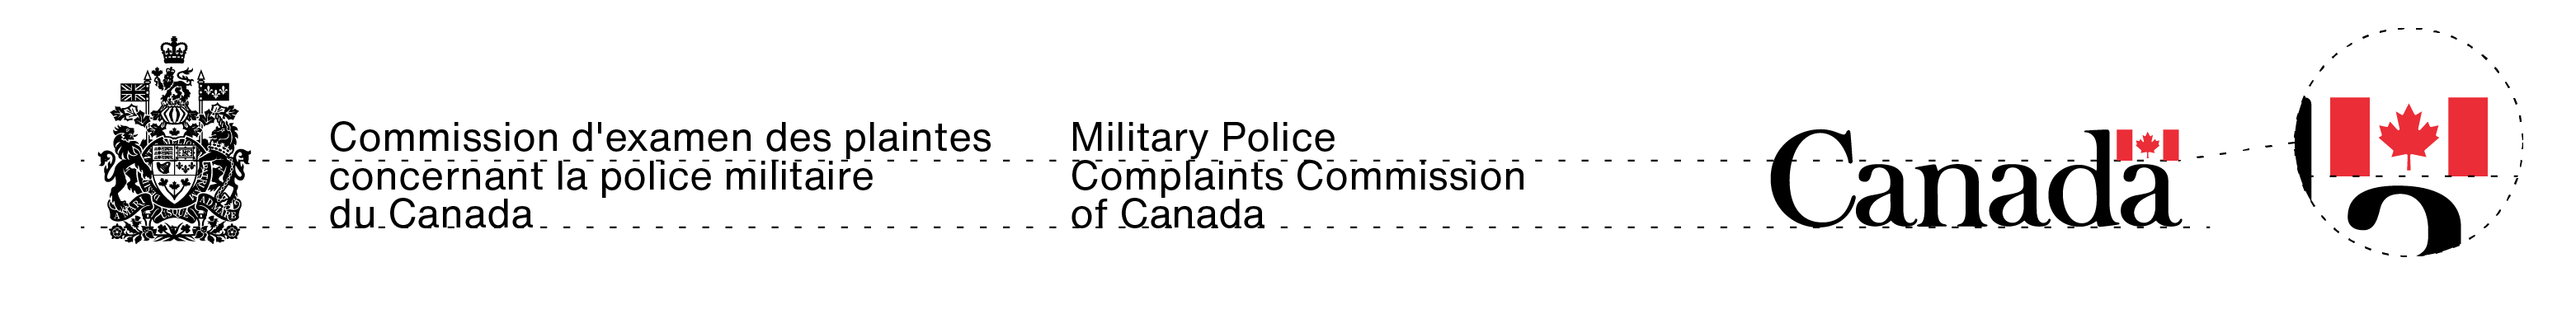 La signature avec armoiries de la Commission d’examen des plaintes concernant la police militaire du Canada et le mot-symbole « Canada » dans leurs couleurs standards. La proportion de leurs tailles est expliquée dans le texte ci-dessus.